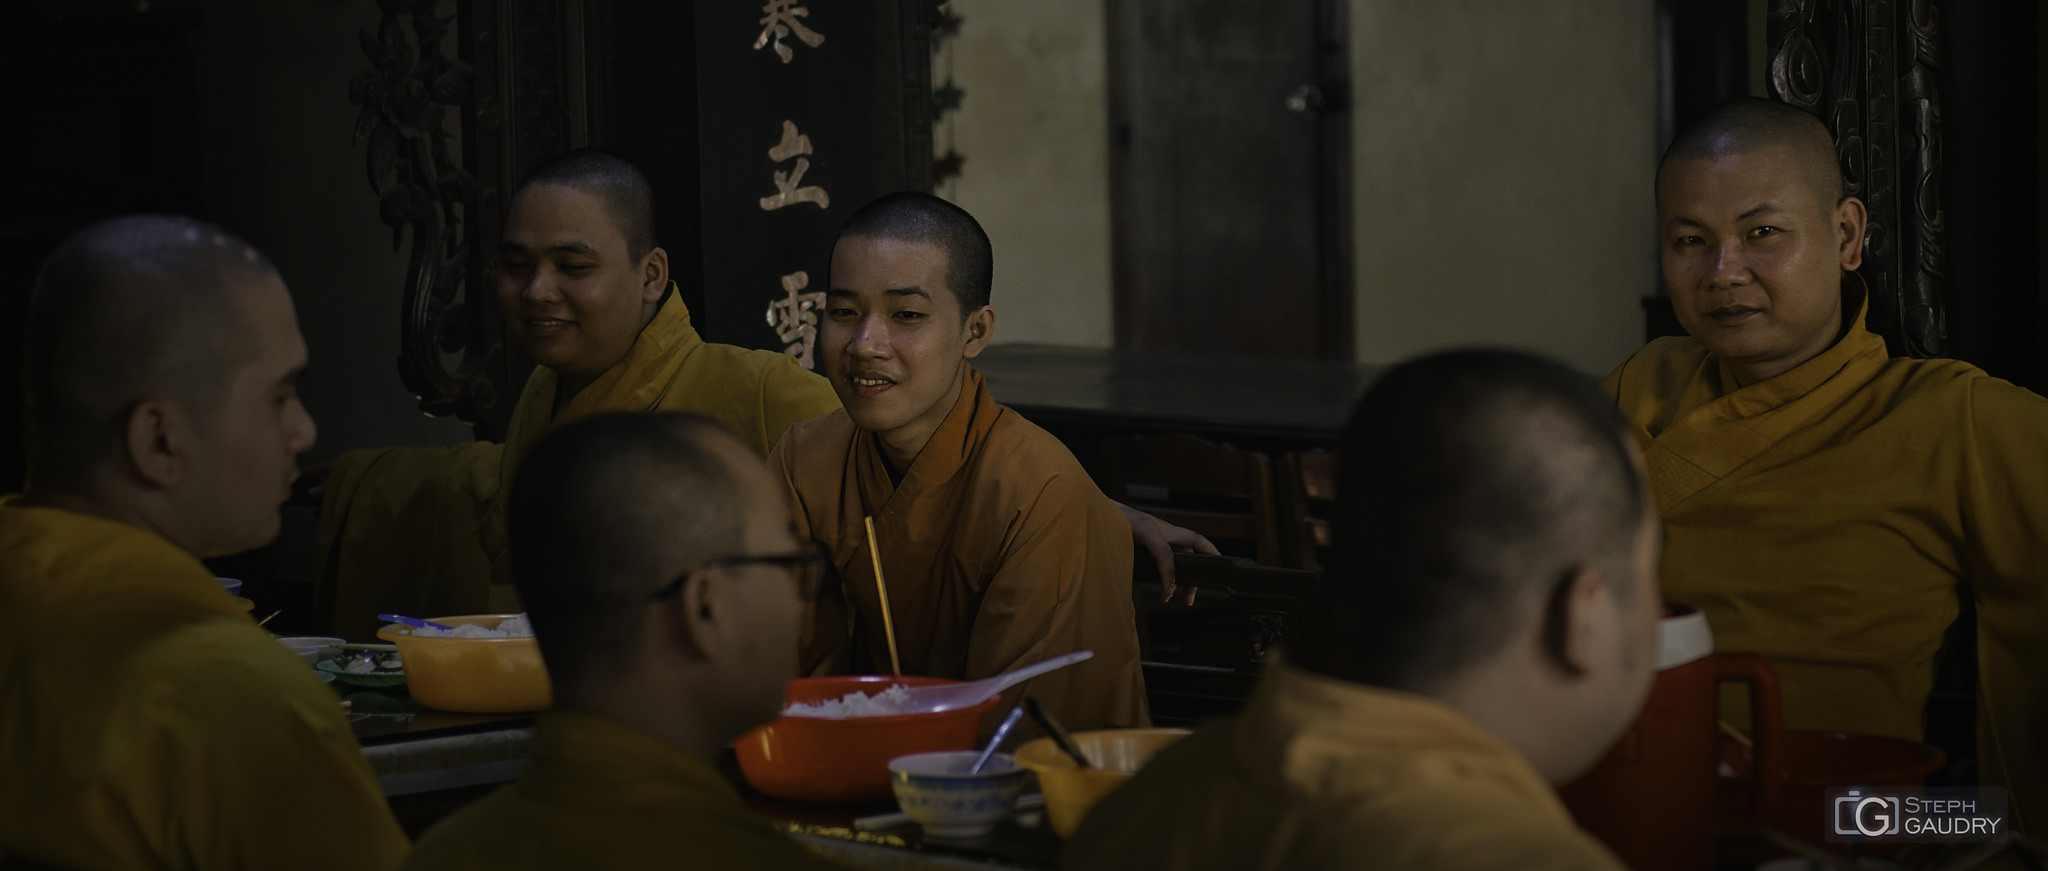 Le repas des moines bouddhistes